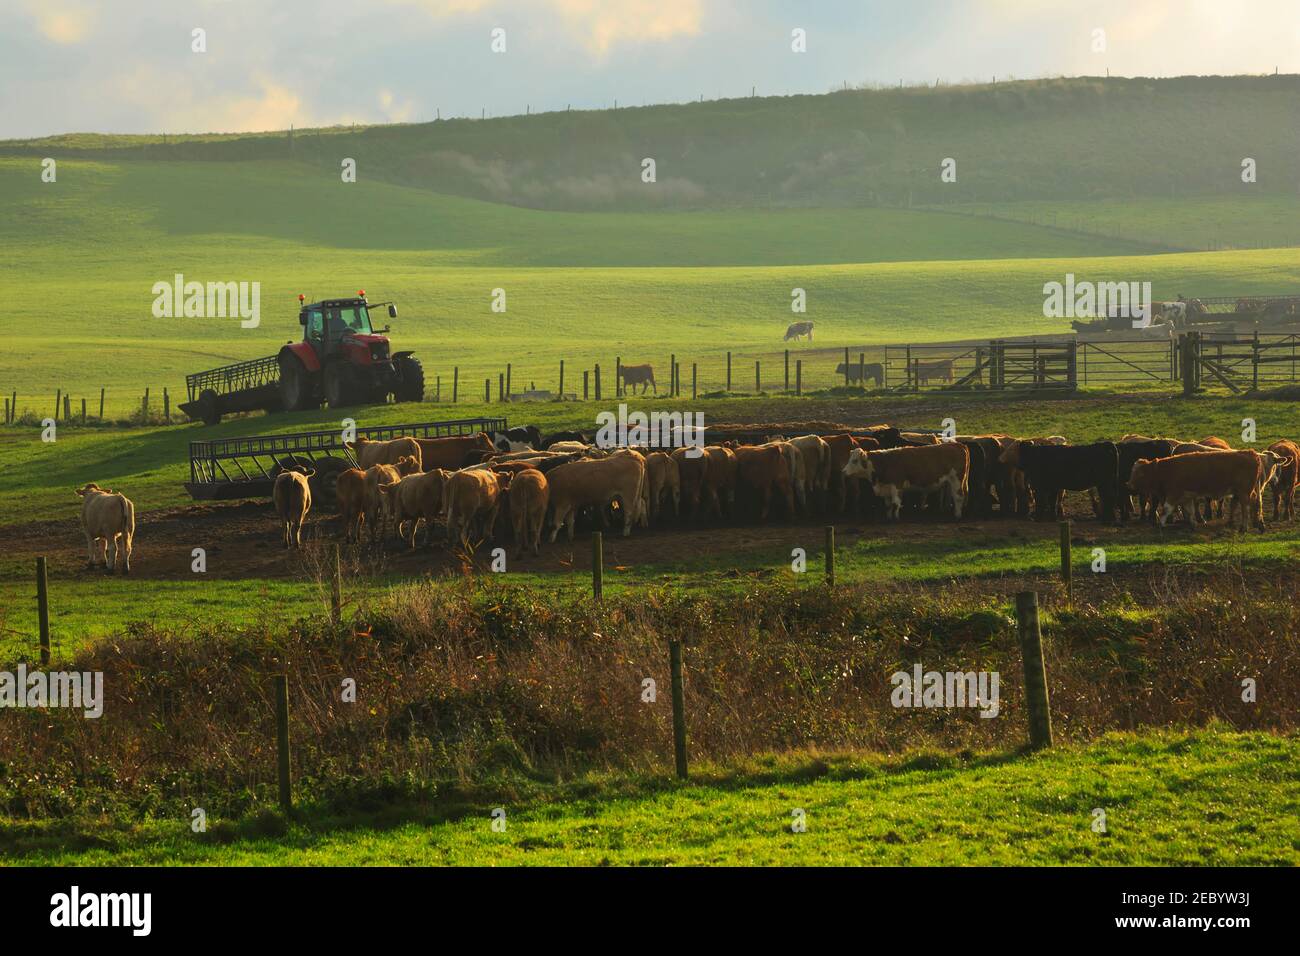 Bovins dans un champ à Gwithian, Cornwall. Les jeunes bovins attendent leur nourriture tôt le matin. Banque D'Images